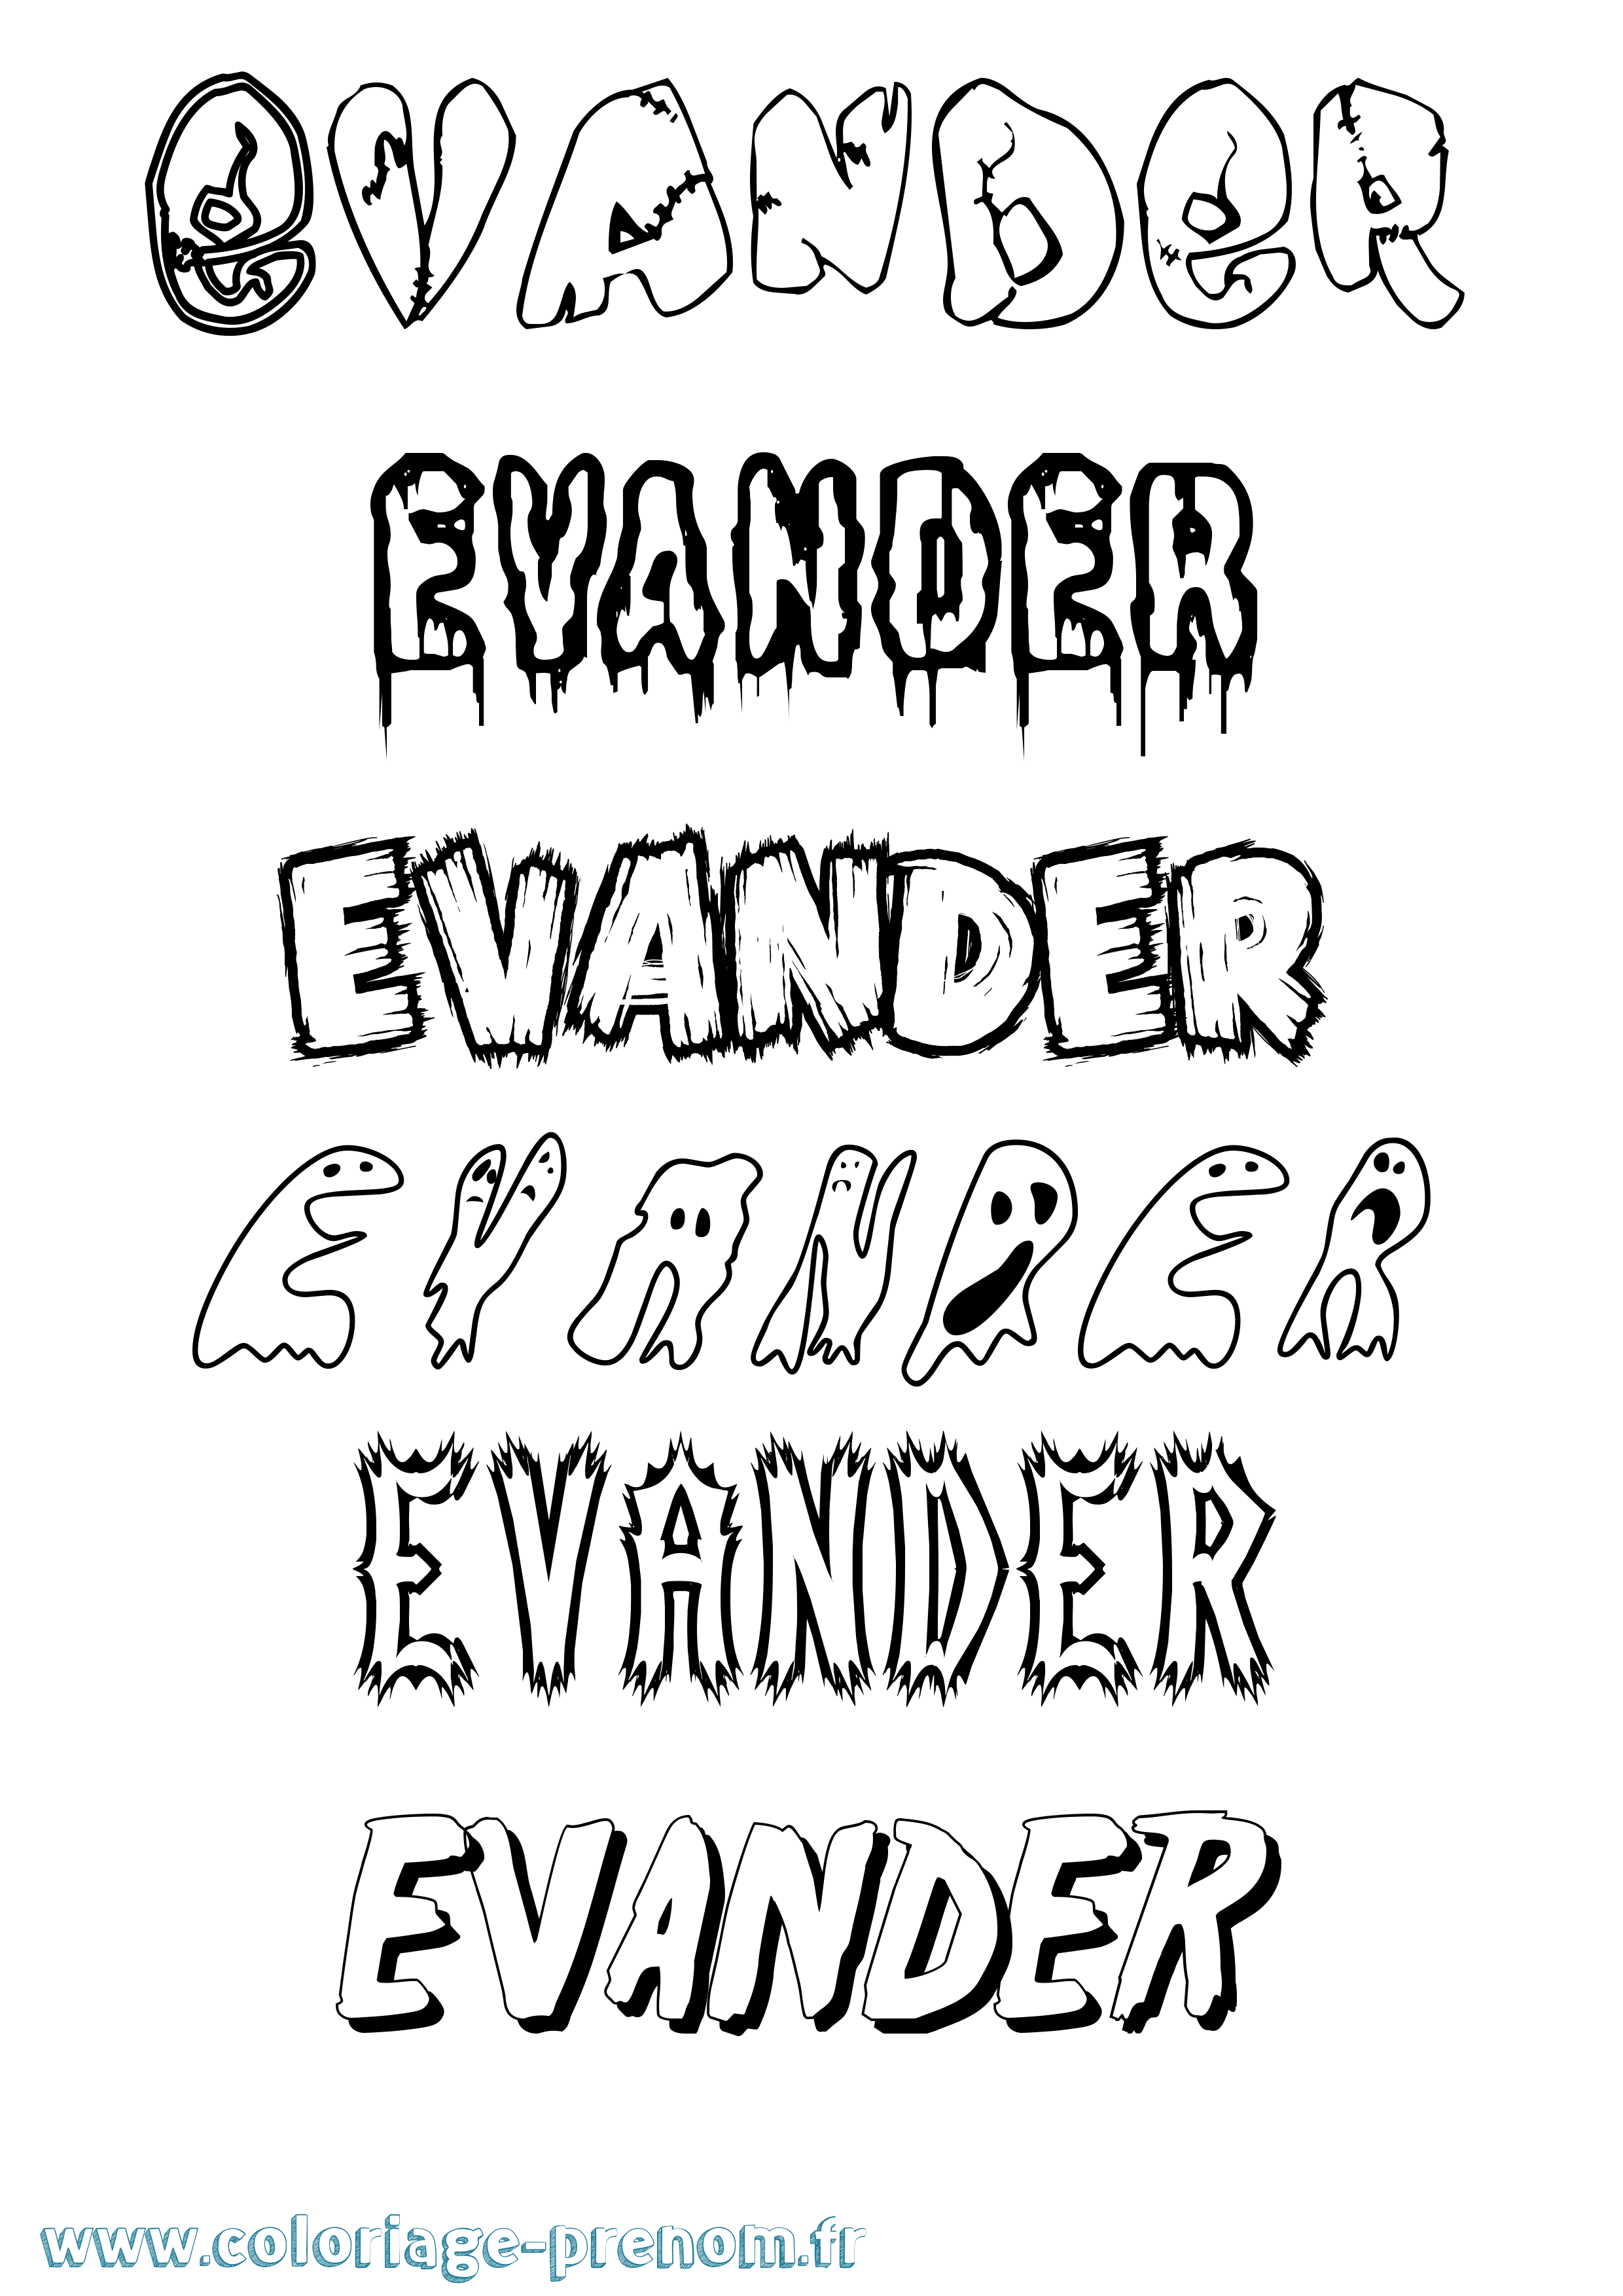 Coloriage prénom Evander Frisson